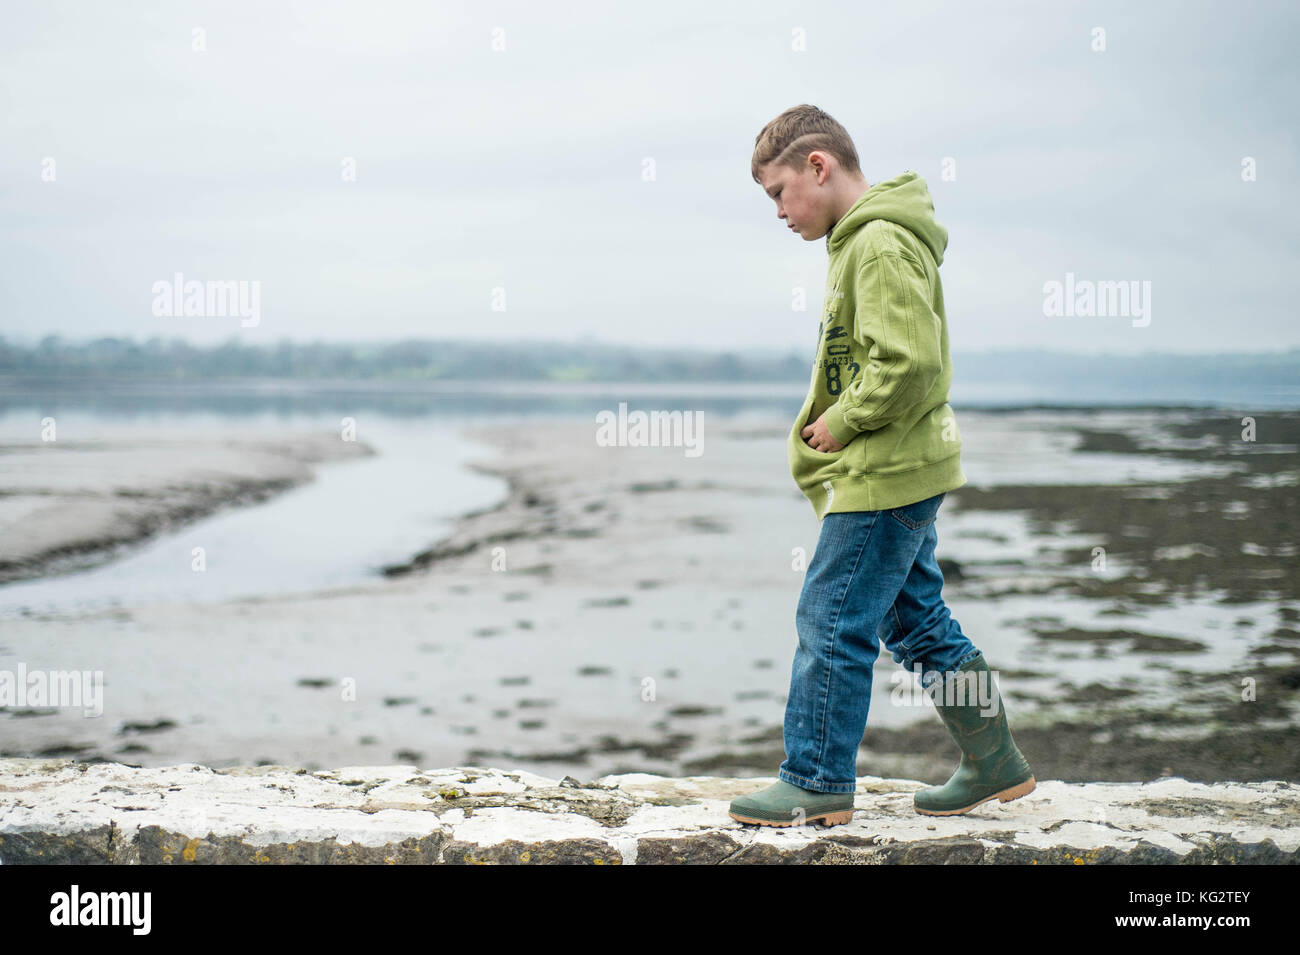 Giovedì 02 Novembre 2017 Una giovane 8,9,10 anno vecchio ragazzo passeggiate lungo una parete verde da indossare gli stivali da pioggia Foto Stock